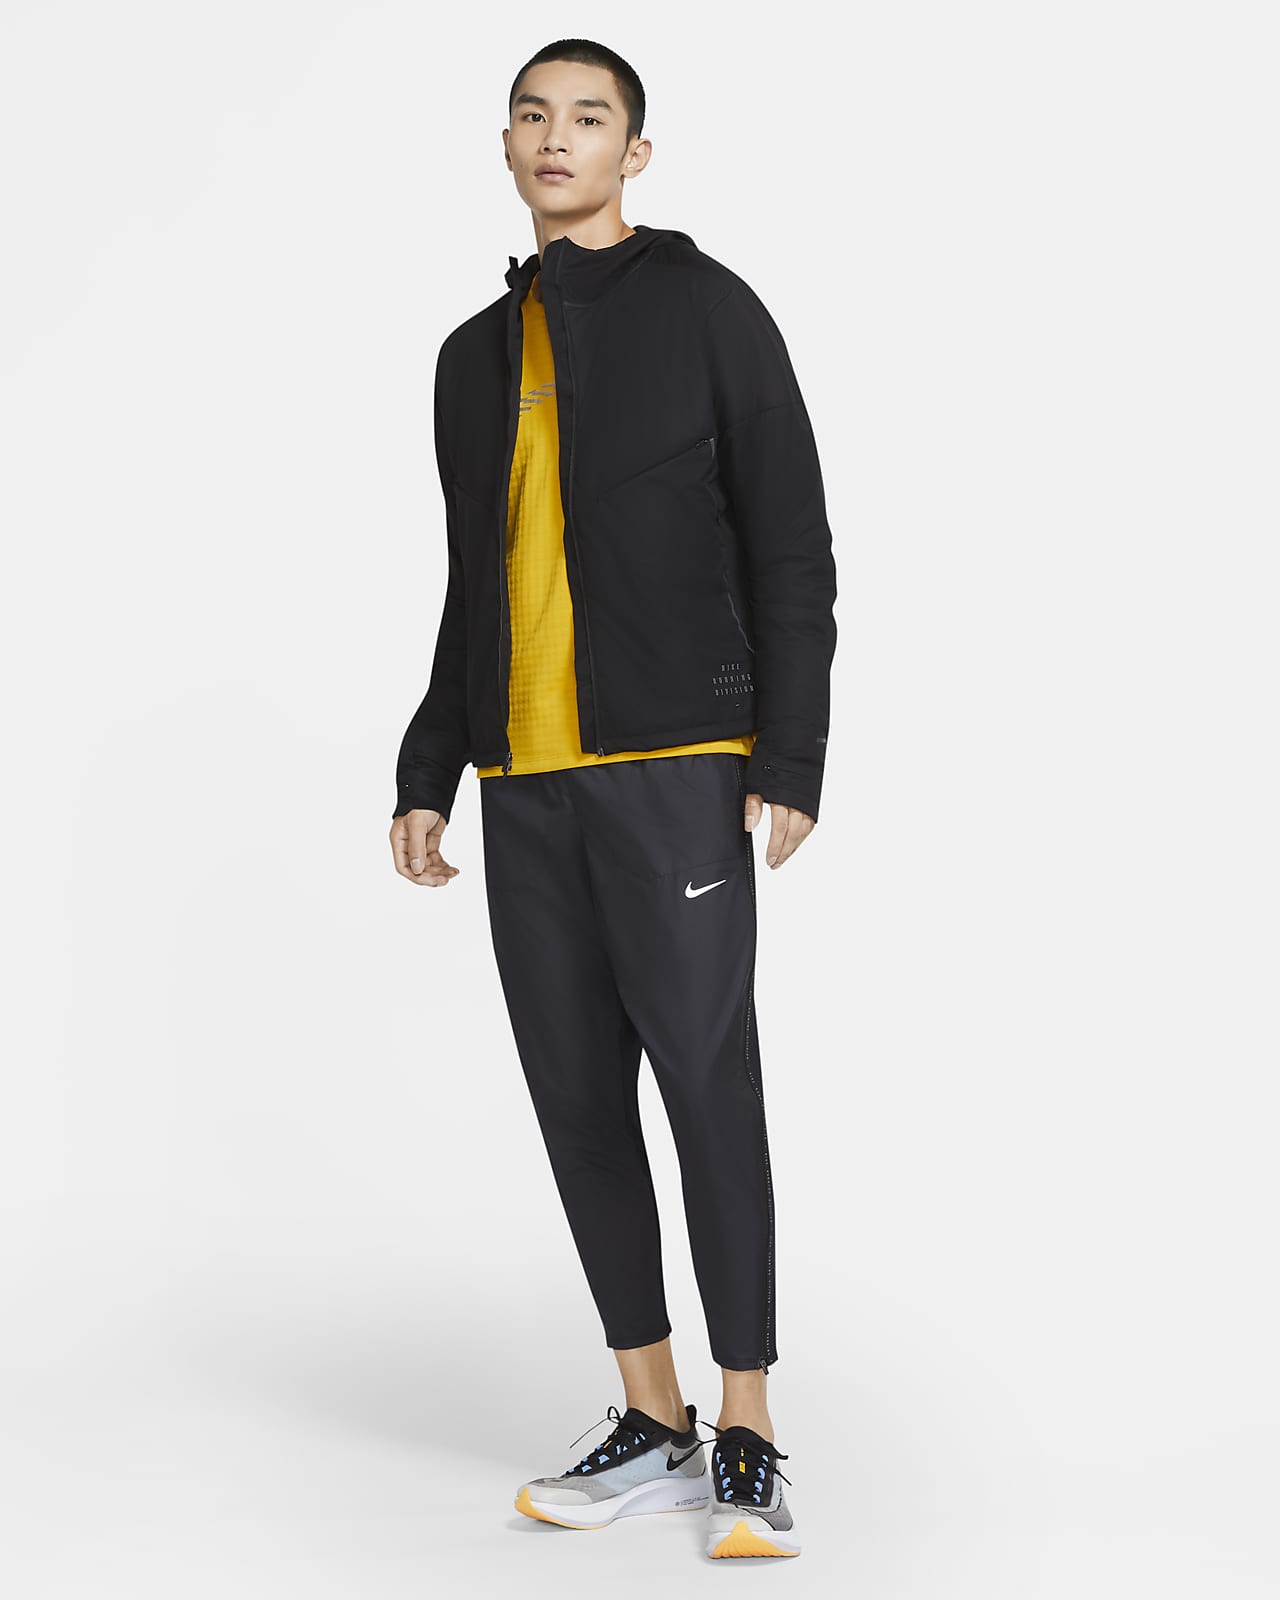 Nike公式 ナイキ ラン ディビジョン メンズ ダイナミック ベント ランニングジャケット オンラインストア 通販サイト